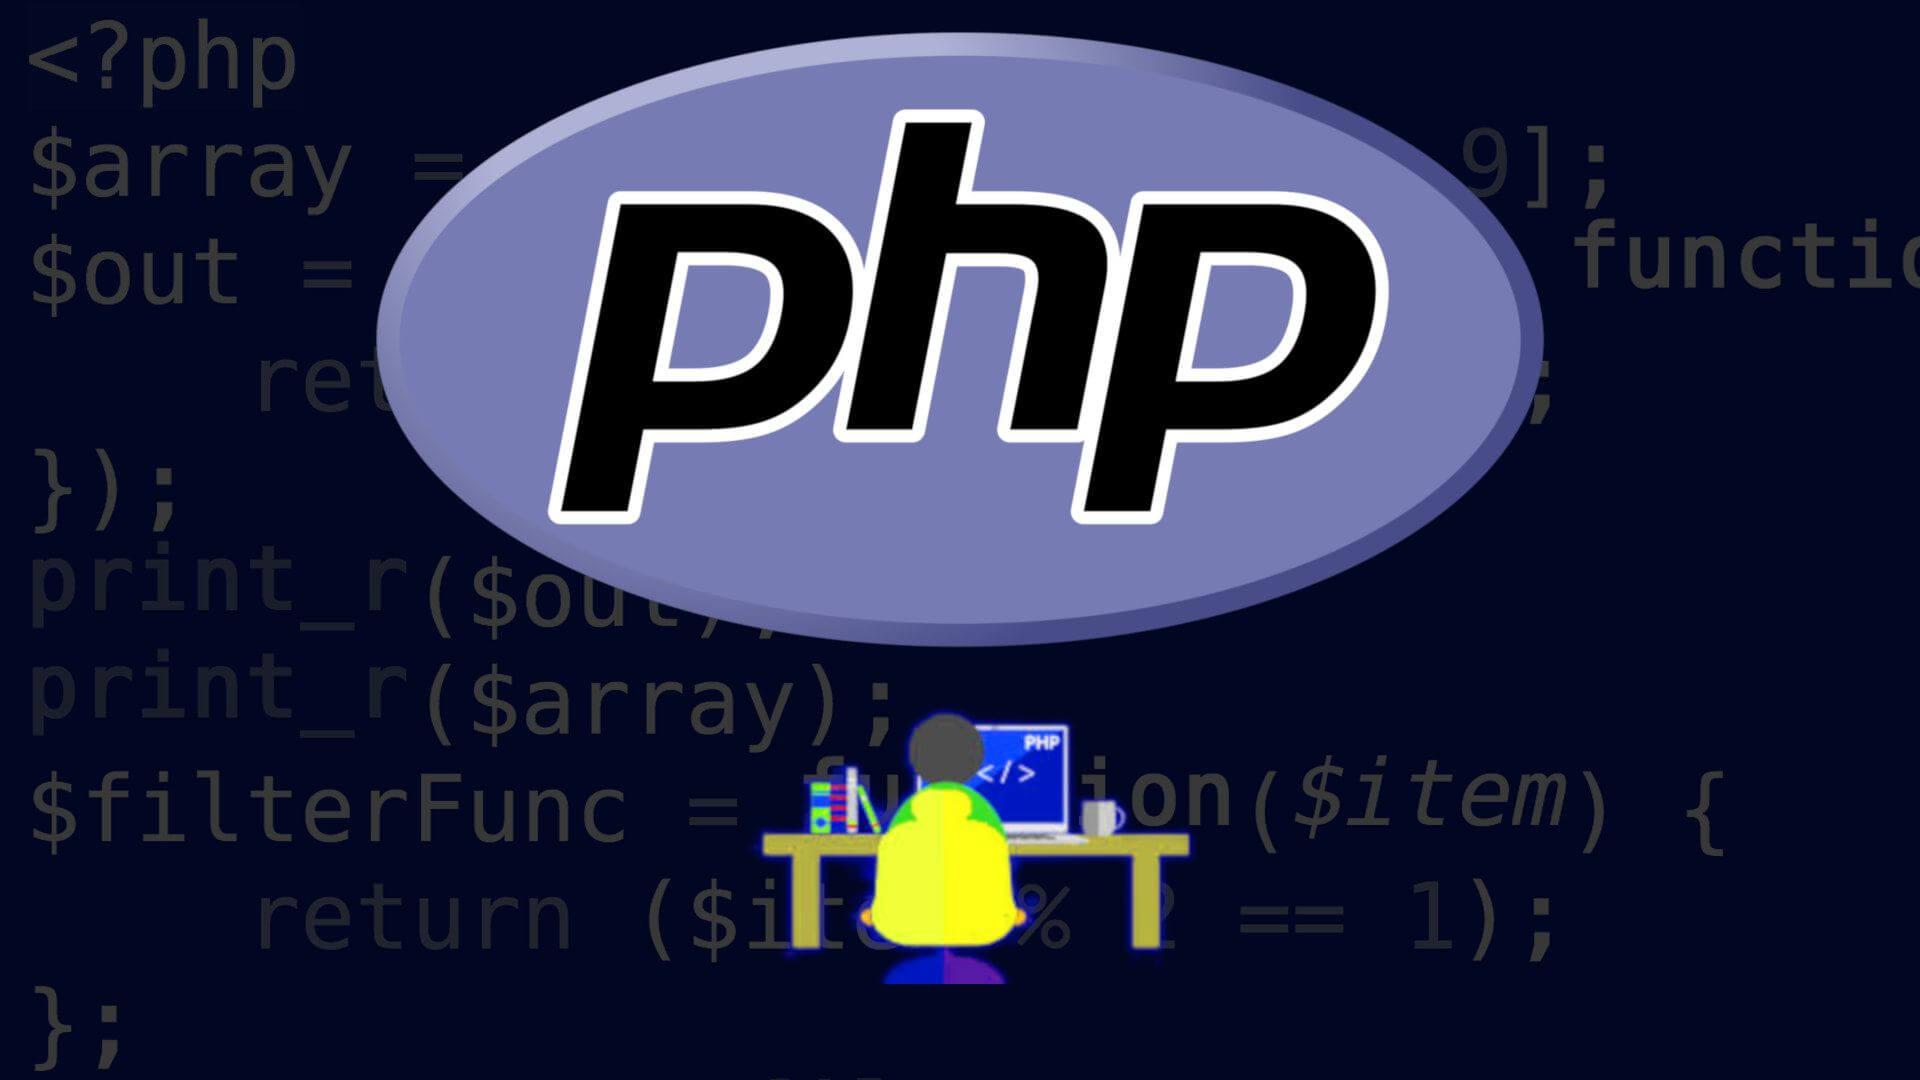 Https com l php u. Php язык программирования. Php программирование. РНР что это в программировании. РНР язык программирования.